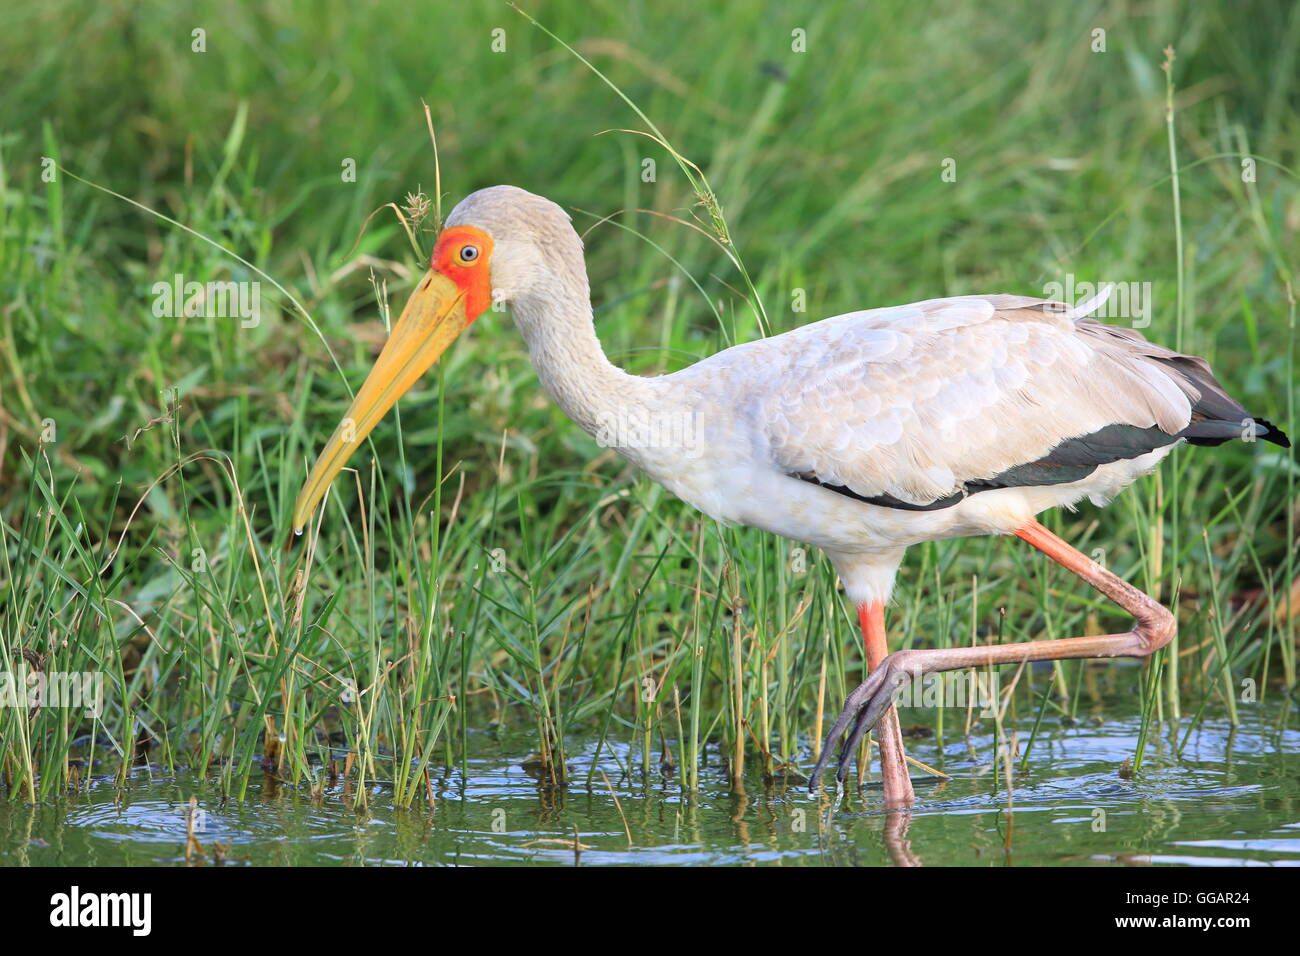 Yellow-billed stork (Mycteria ibis) in Queen Elizabeth National Park, Uganda Stock Photo